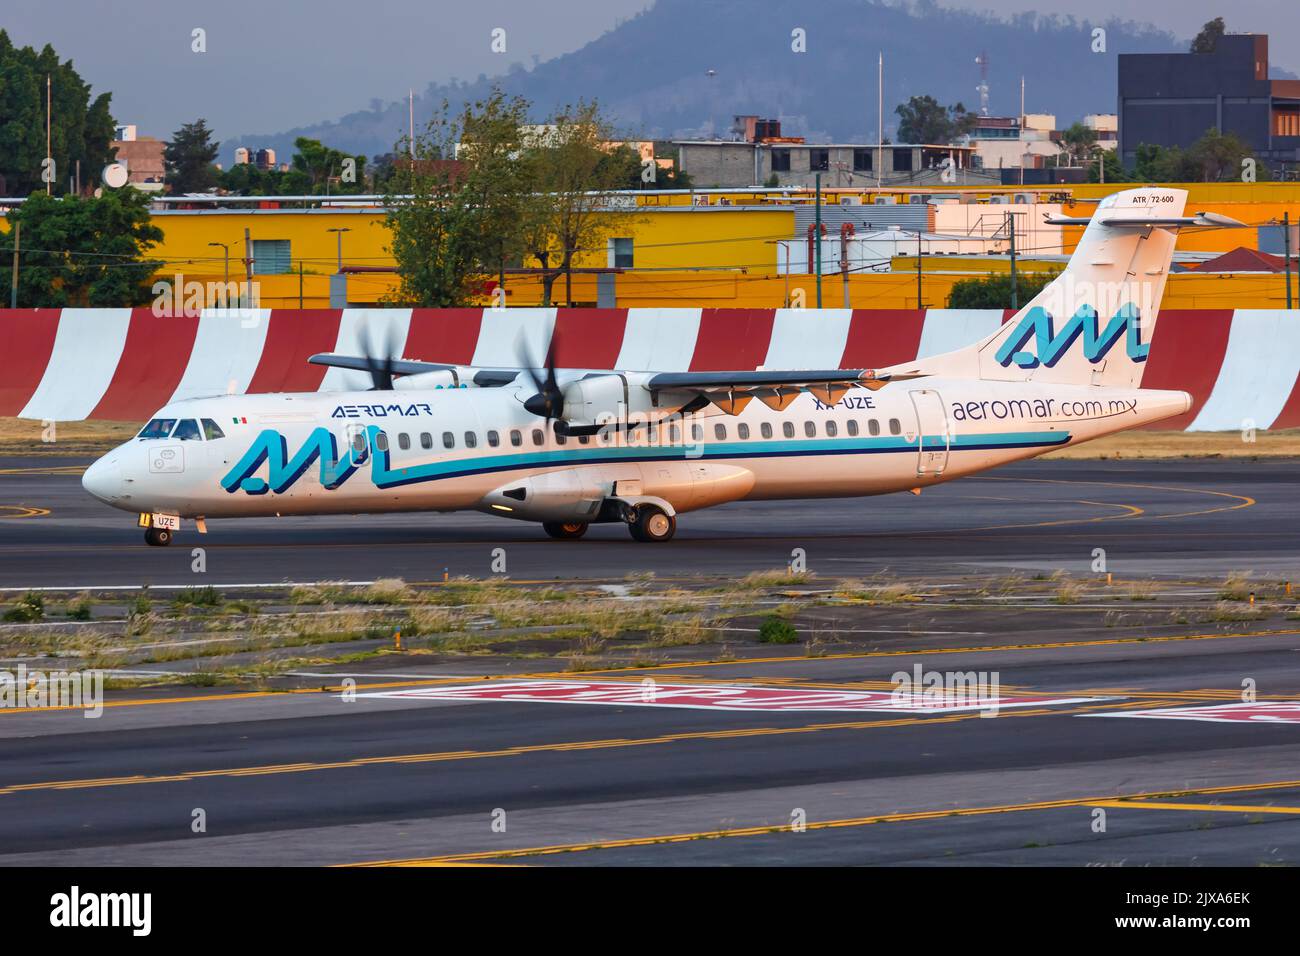 Ciudad de México, México - 15 de abril de 2022: Avión ATR 72-600 de Aeromar en el aeropuerto de la Ciudad de México (MEX) en México. Foto de stock